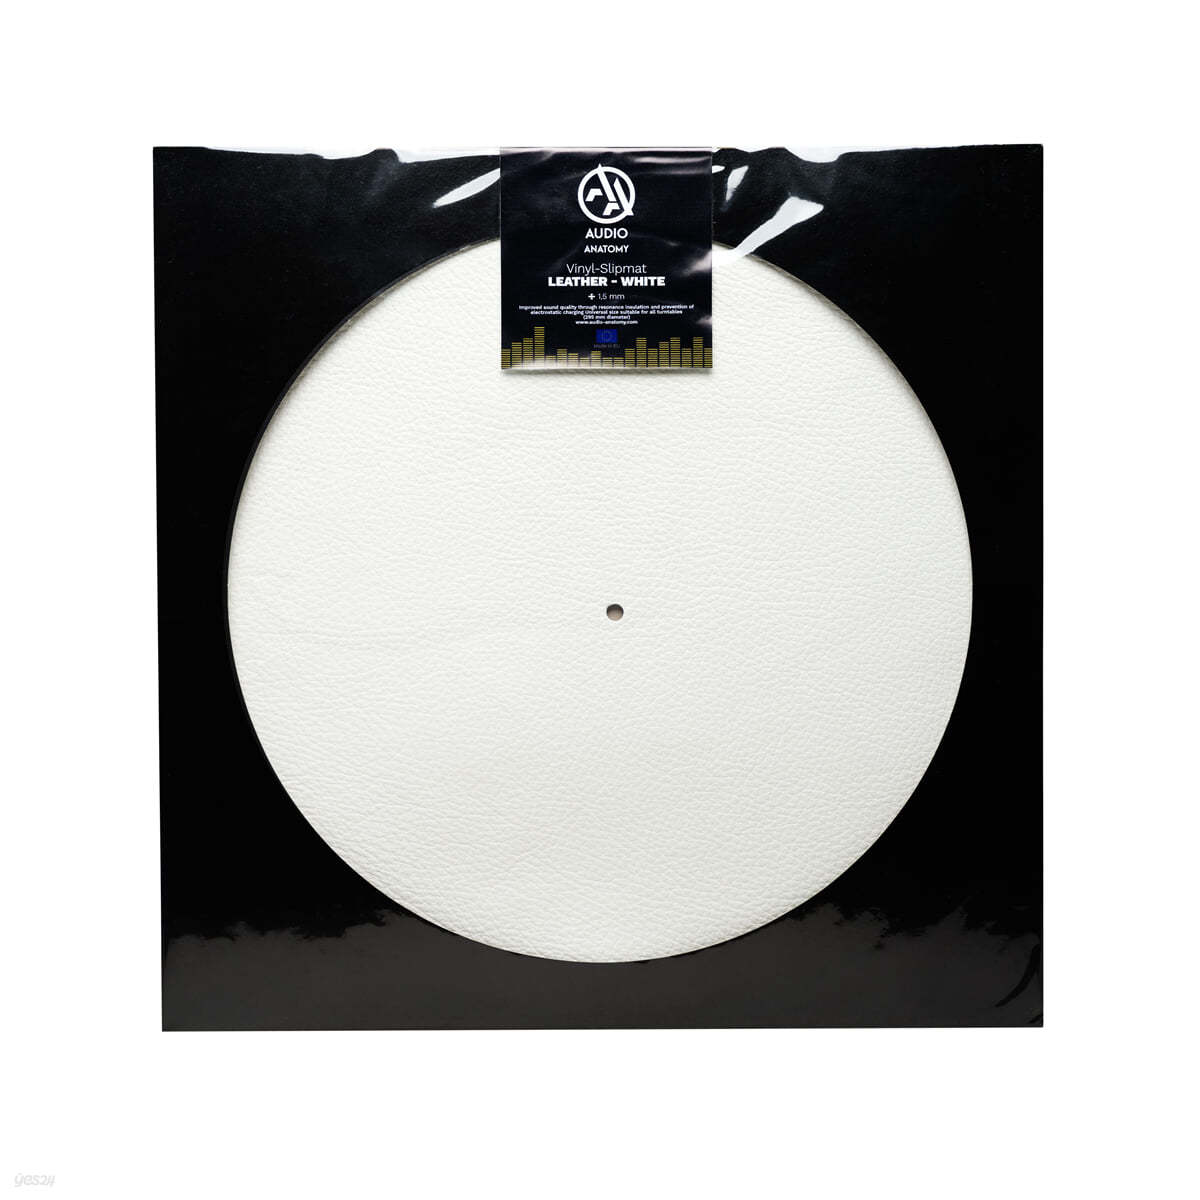 화이트 가죽 턴테이블 슬립매트 (Leather Vinyl Slipmat / White)